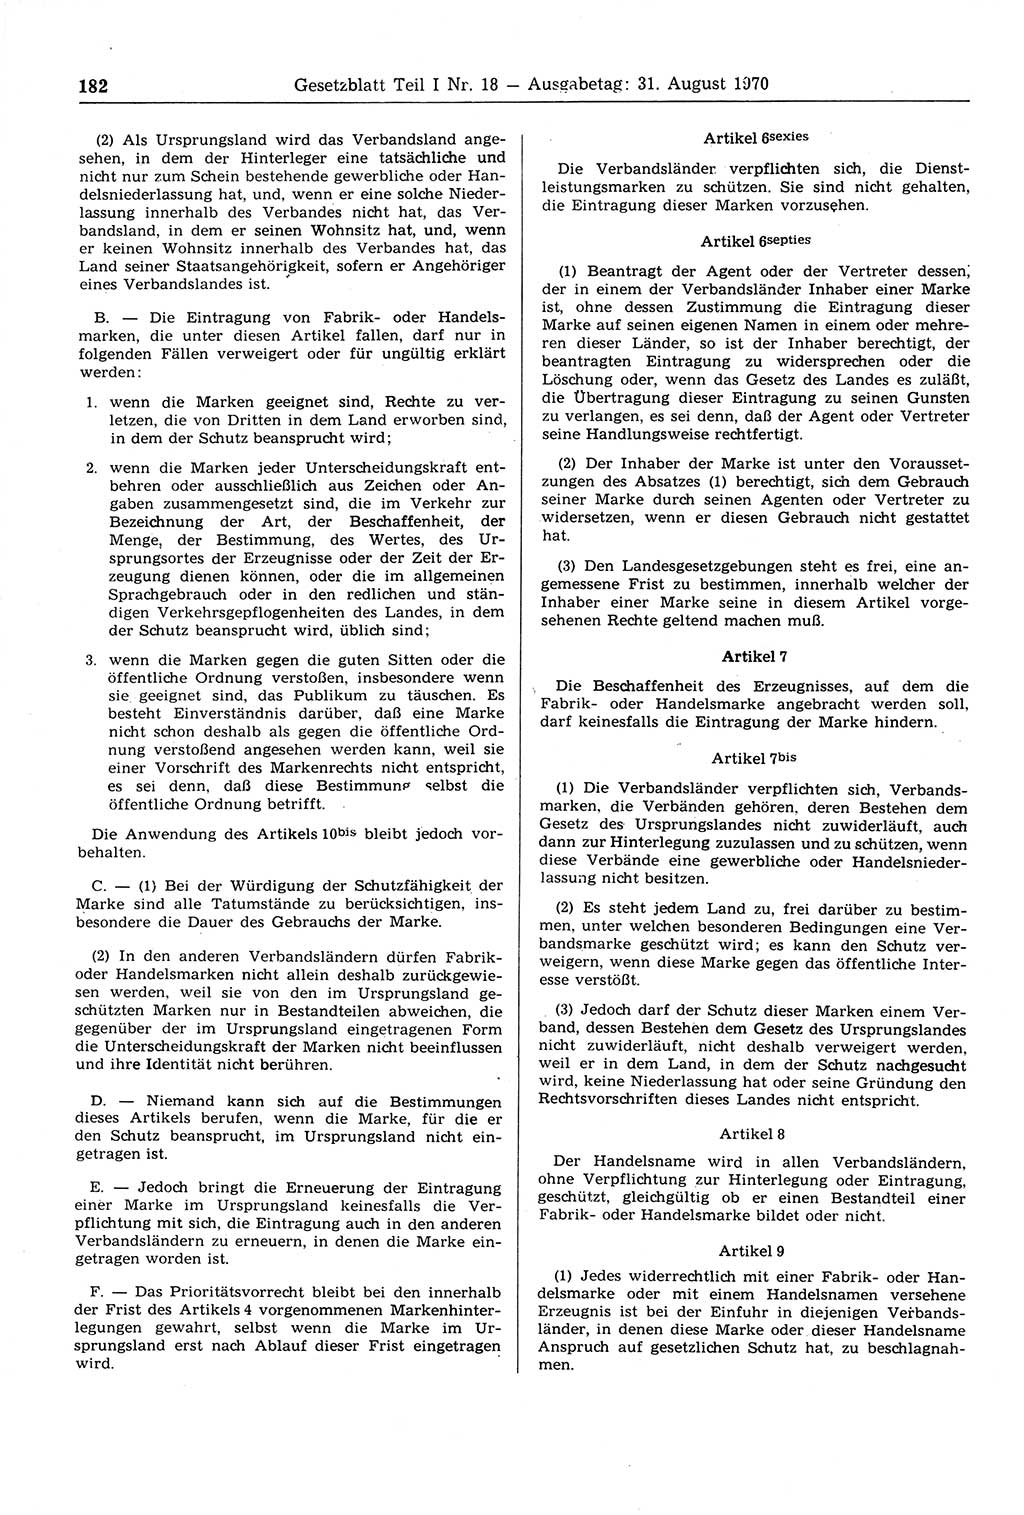 Gesetzblatt (GBl.) der Deutschen Demokratischen Republik (DDR) Teil Ⅰ 1970, Seite 182 (GBl. DDR Ⅰ 1970, S. 182)